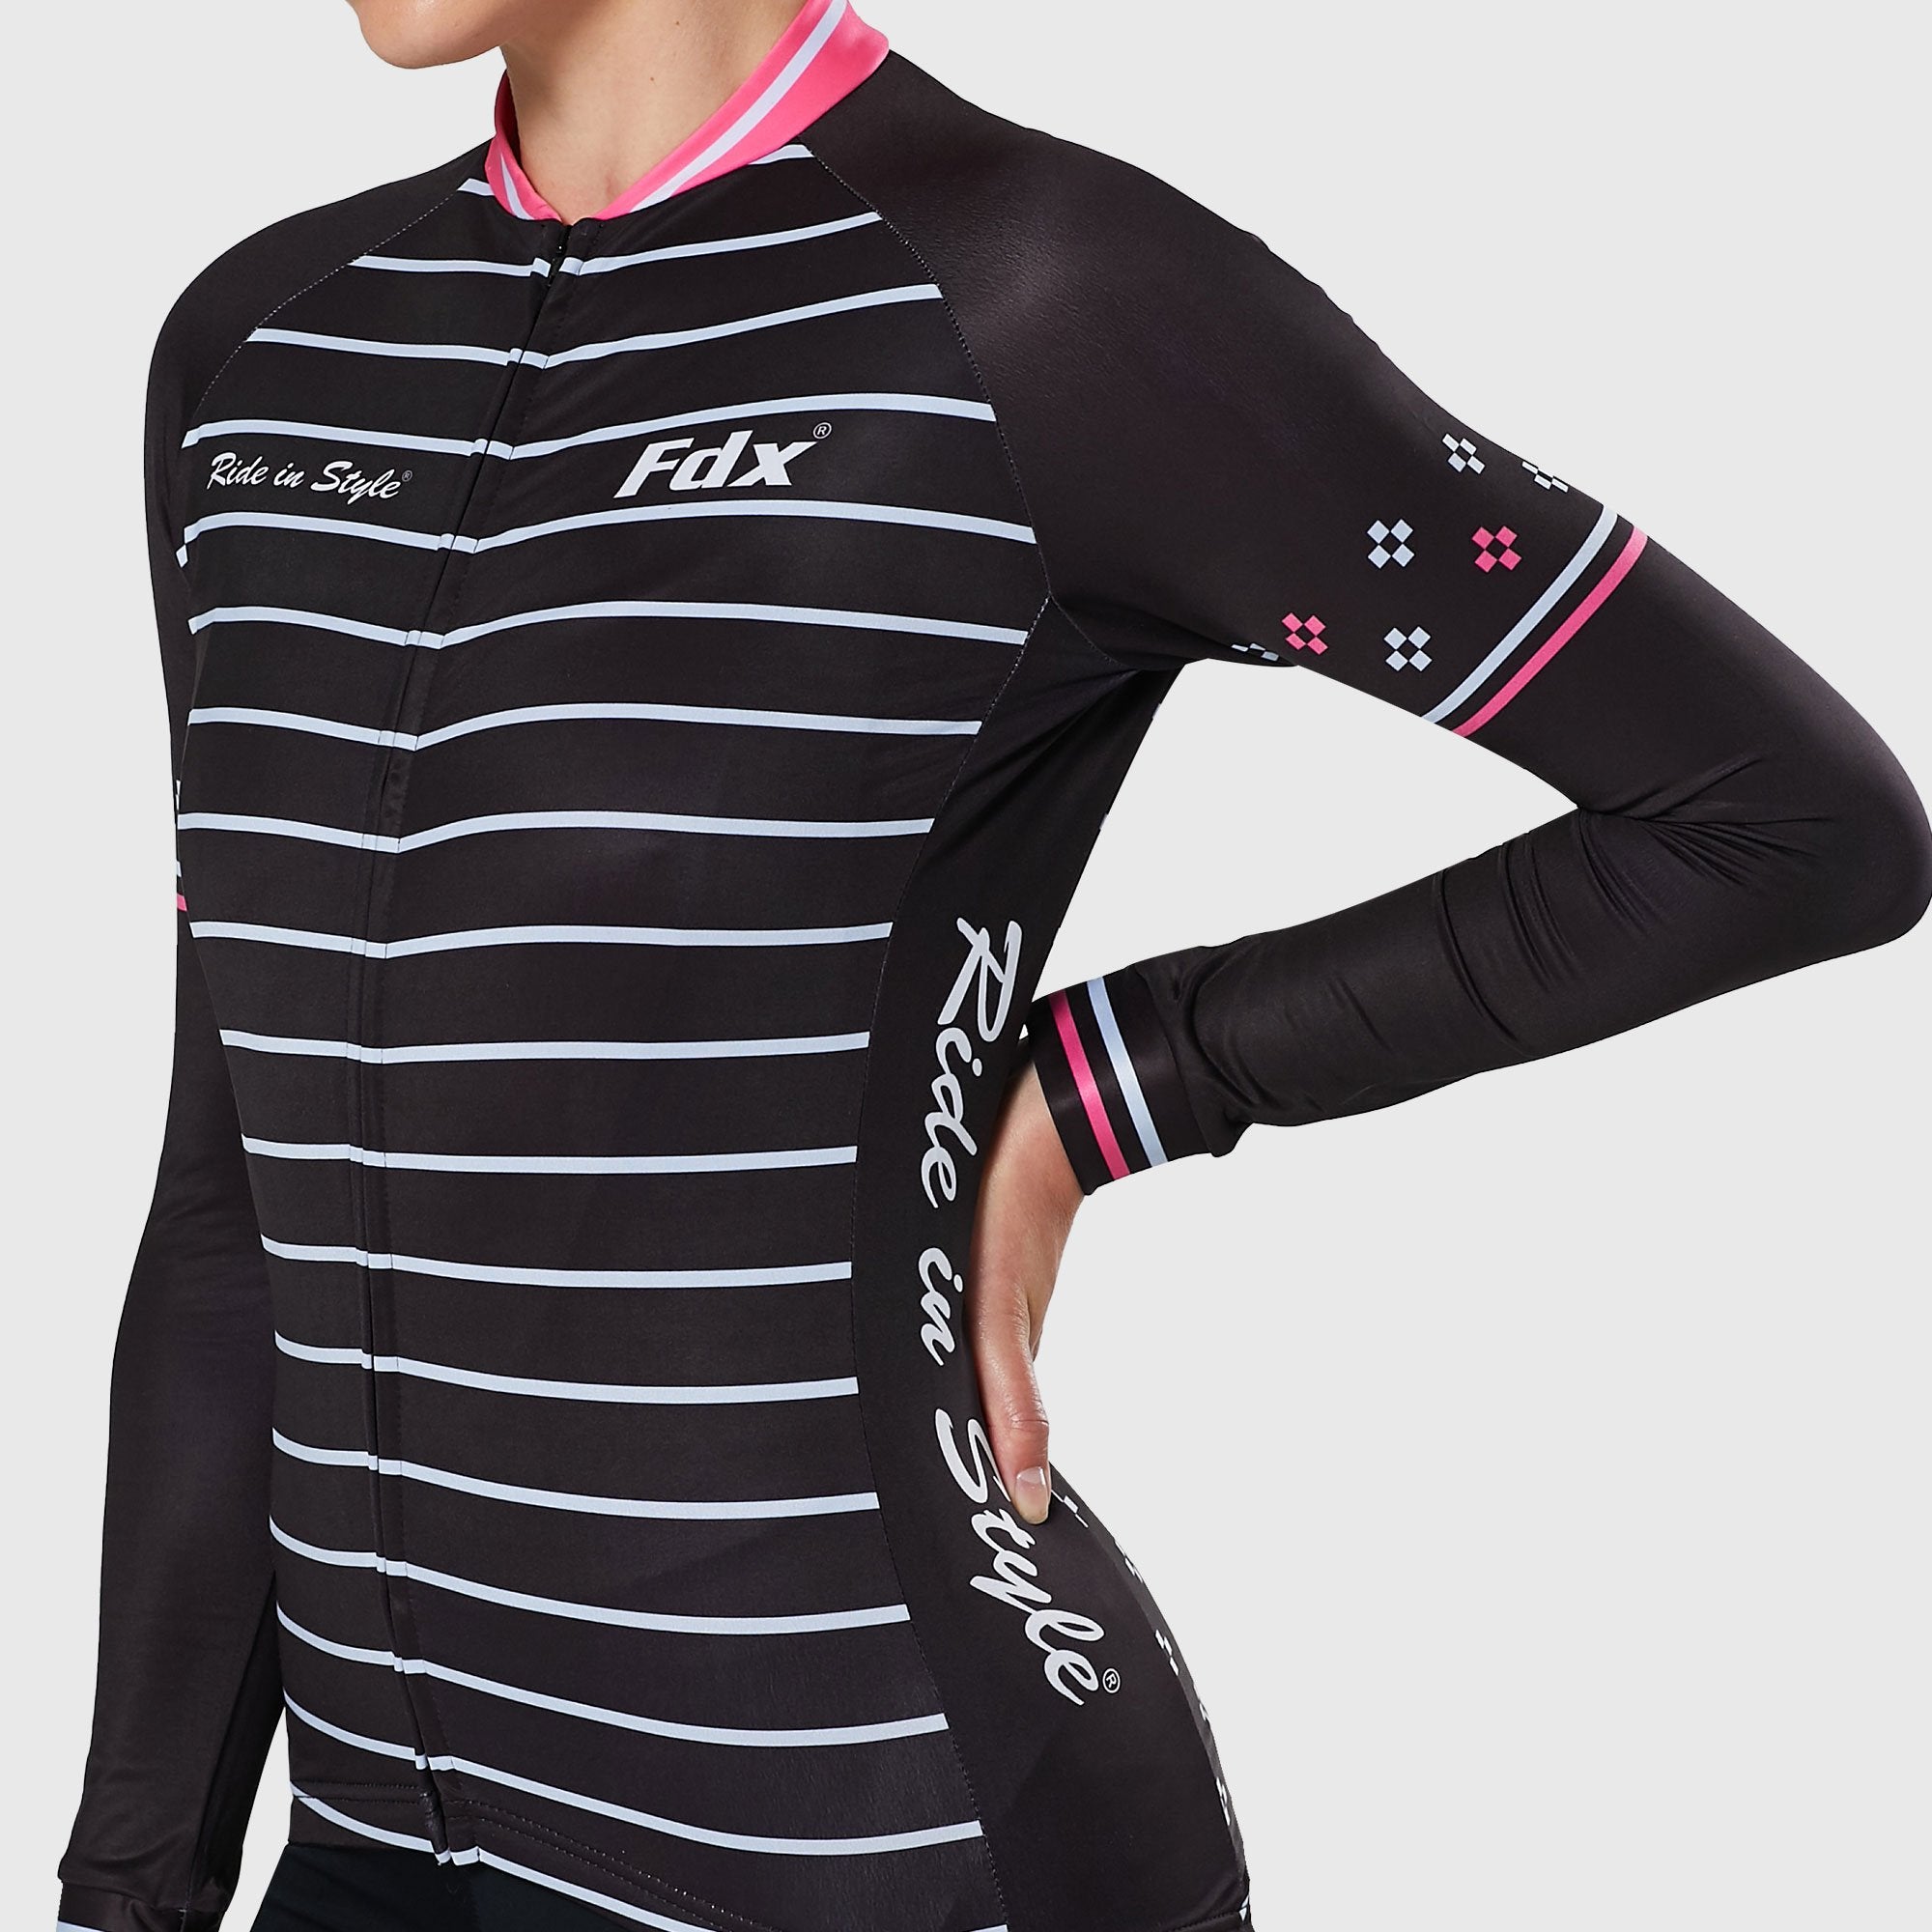 Fdx Ripple Pink Women's Fleeced Lined Winter Cycling Jersey